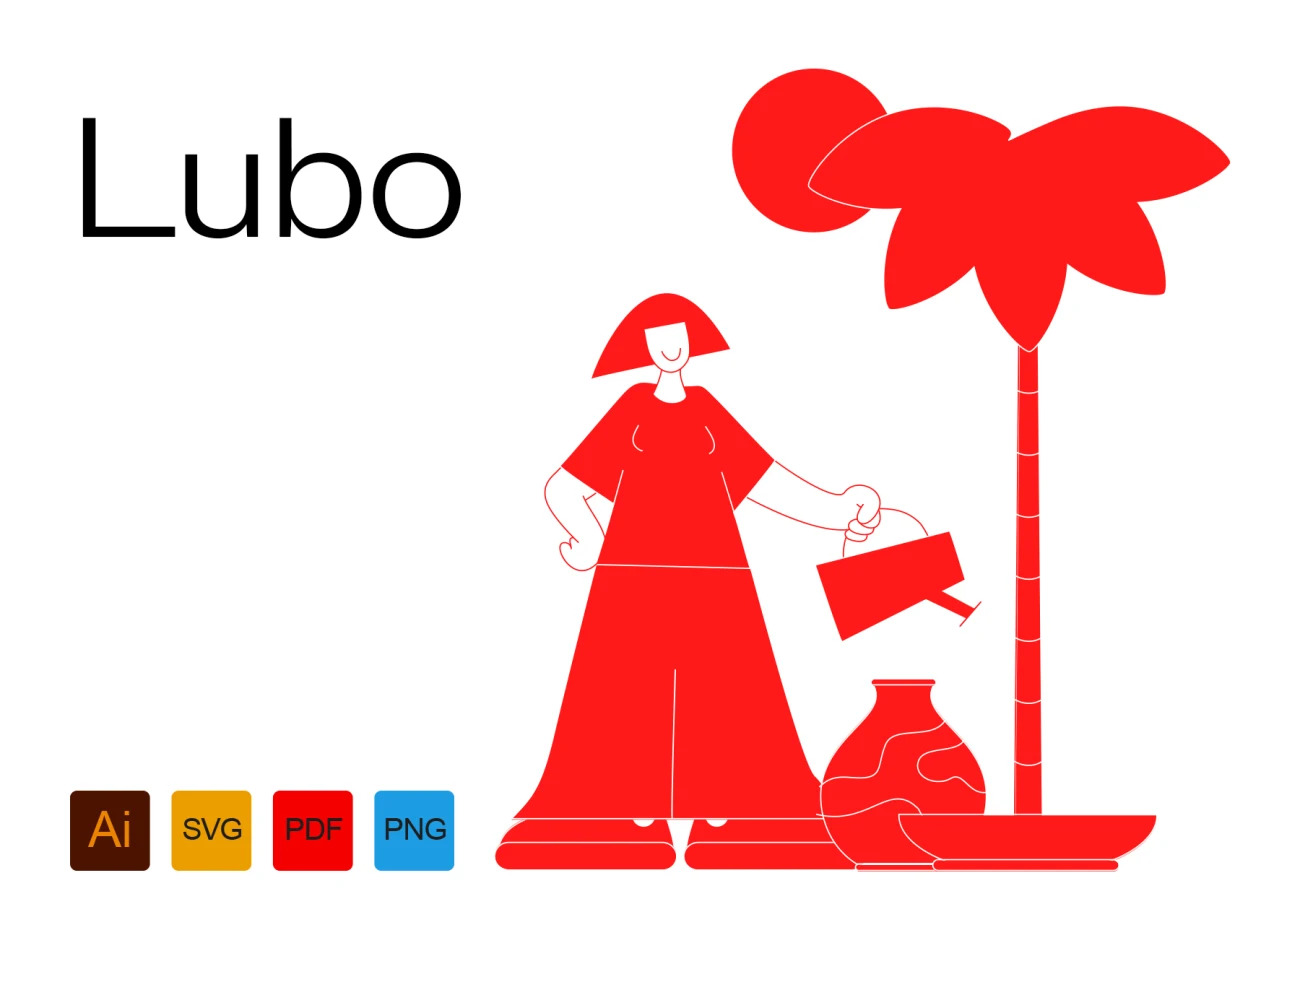 Lubo 25款高质量矢量实心抽象人物阅读社交休息淋雨骑车爬山遛鸟新邮件插图合集-人物插画、场景插画、学习生活、插画、插画风格、概念创意、社交购物、线条手绘、趣味漫画-到位啦UI